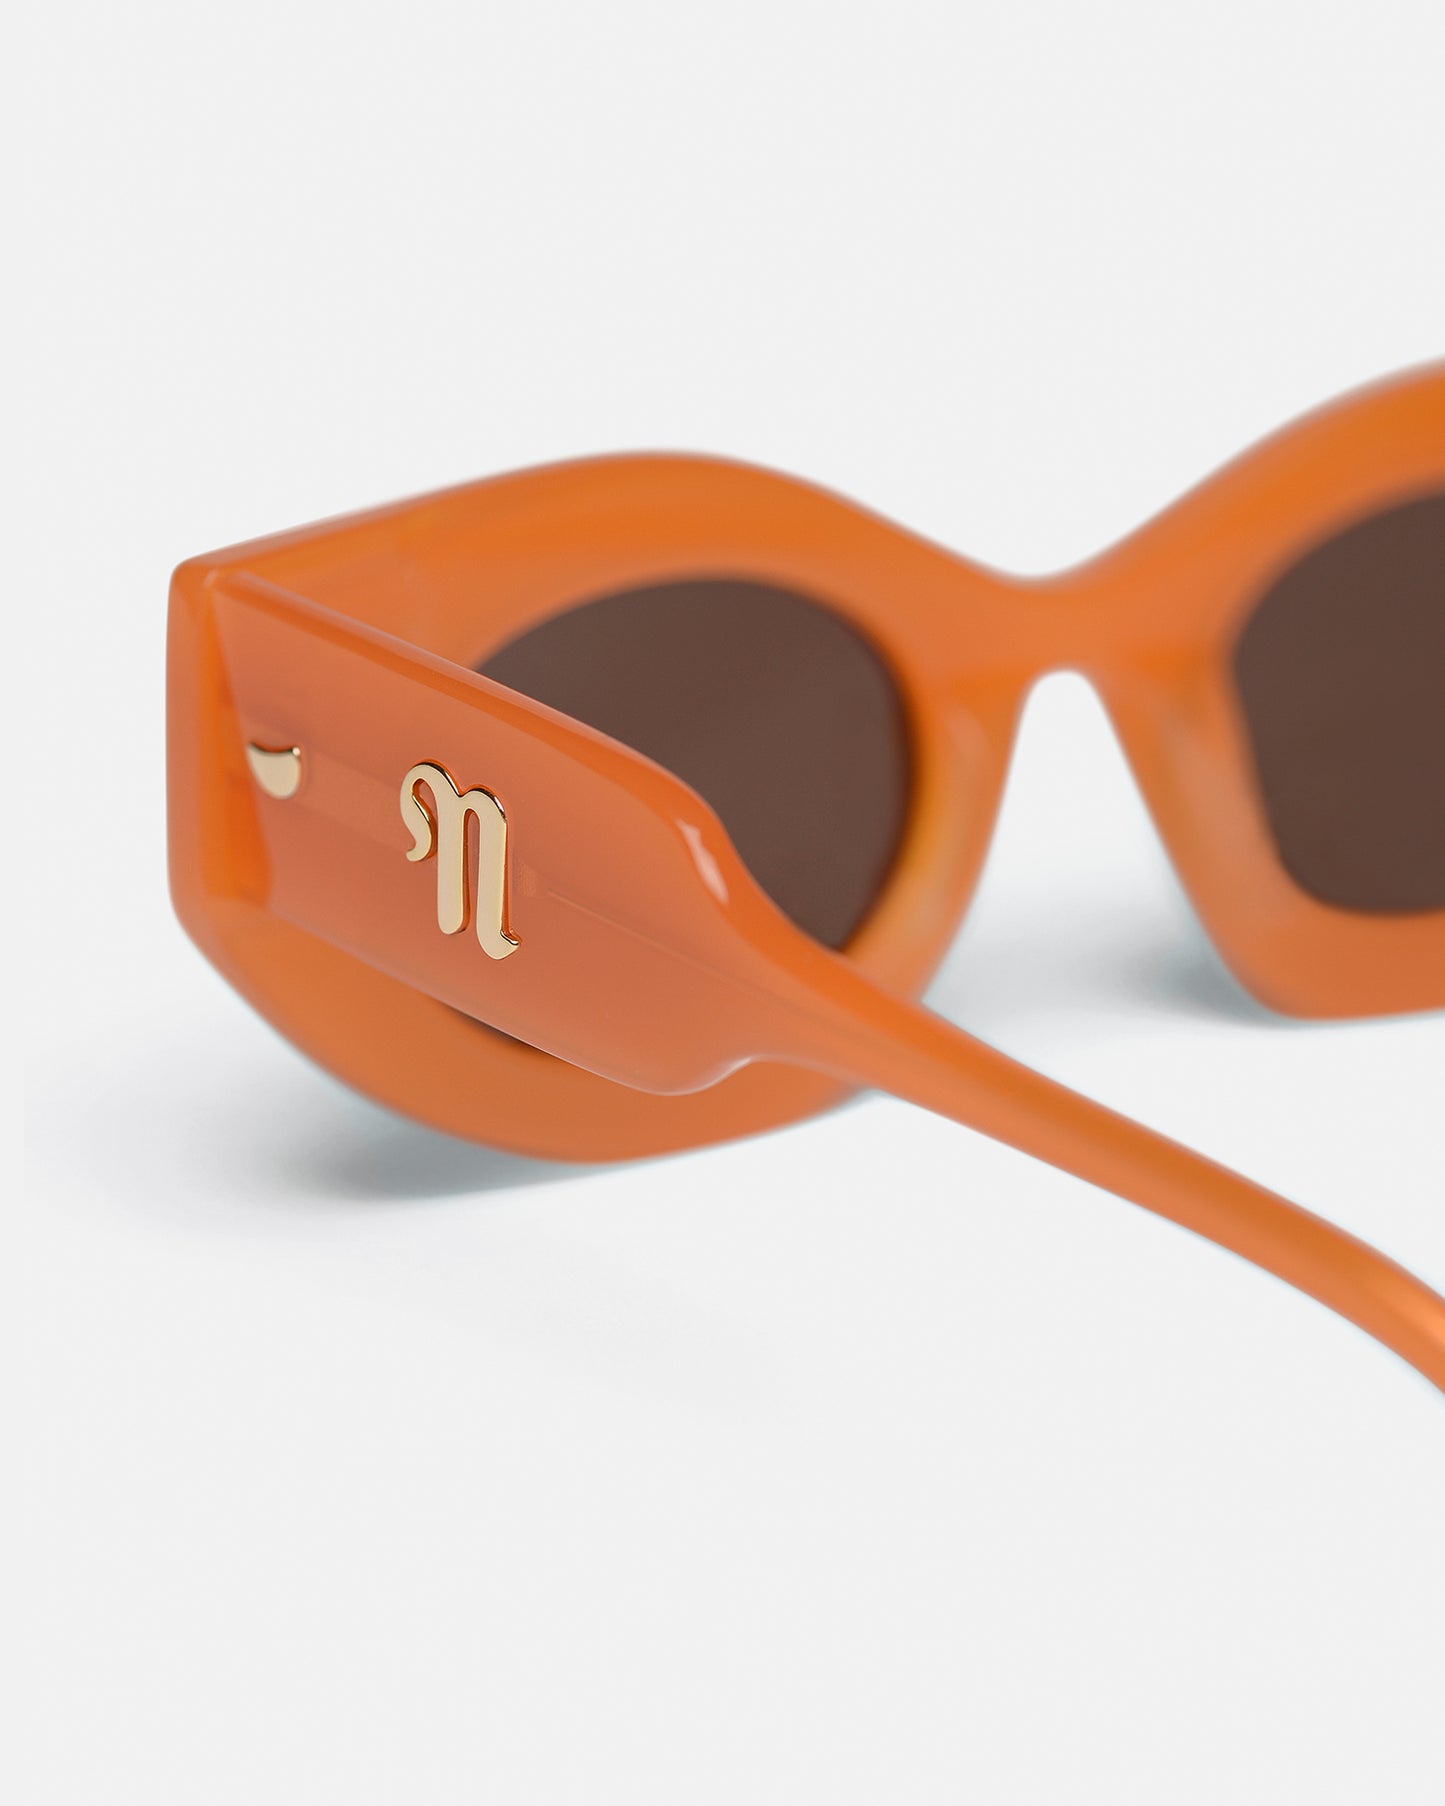 Leonie - Bio-Plastic Sunglasses - Orange Merino